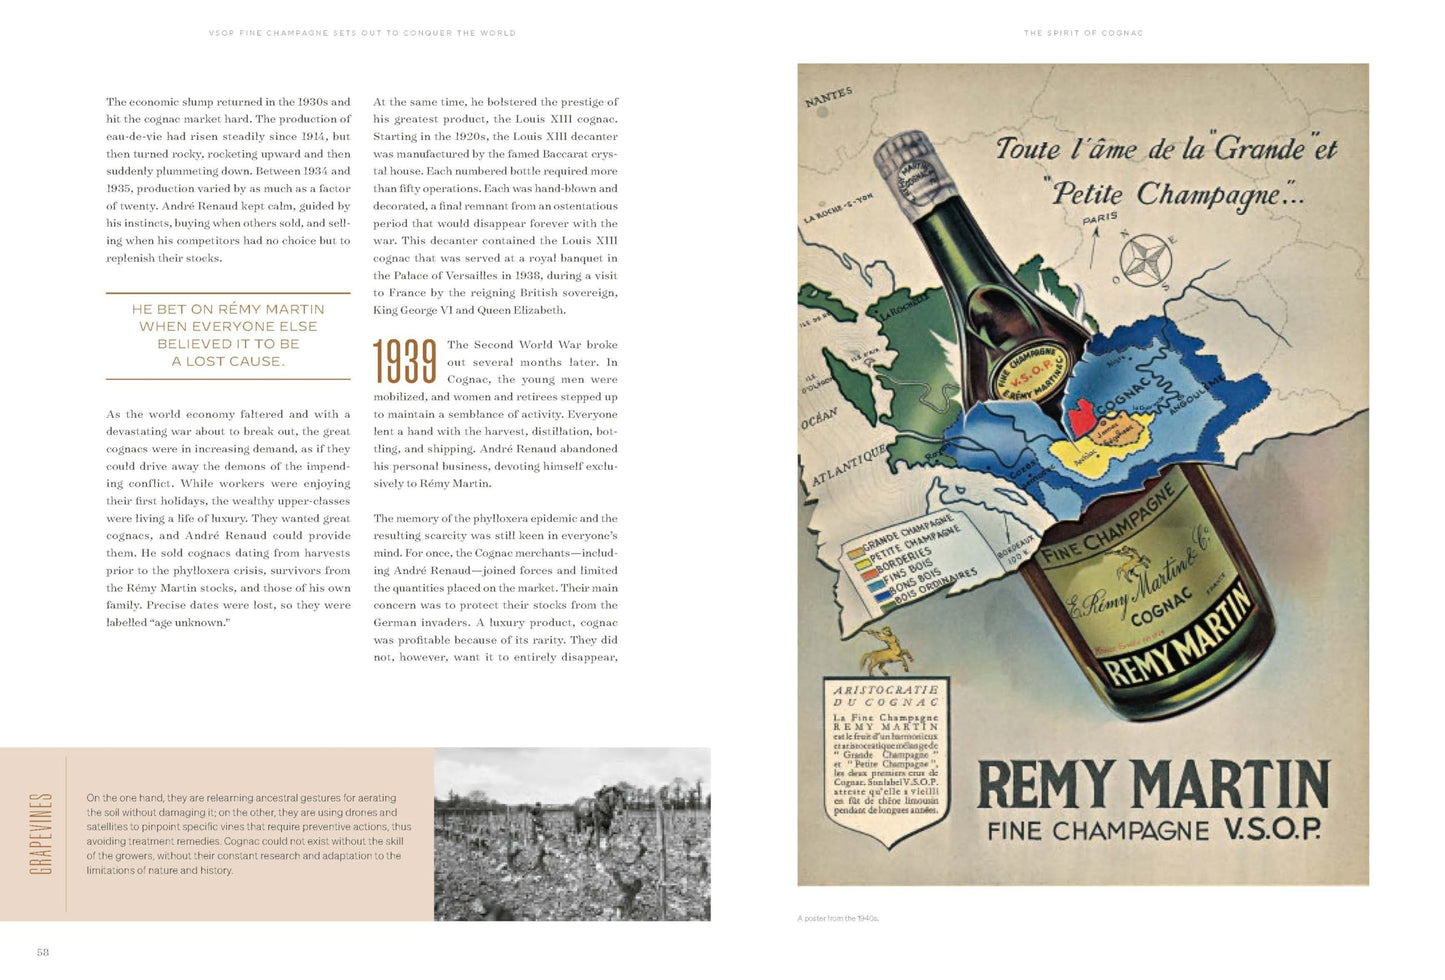 Spirit of Cognac: Rémy Martin, 300 Years of Savoir Faire